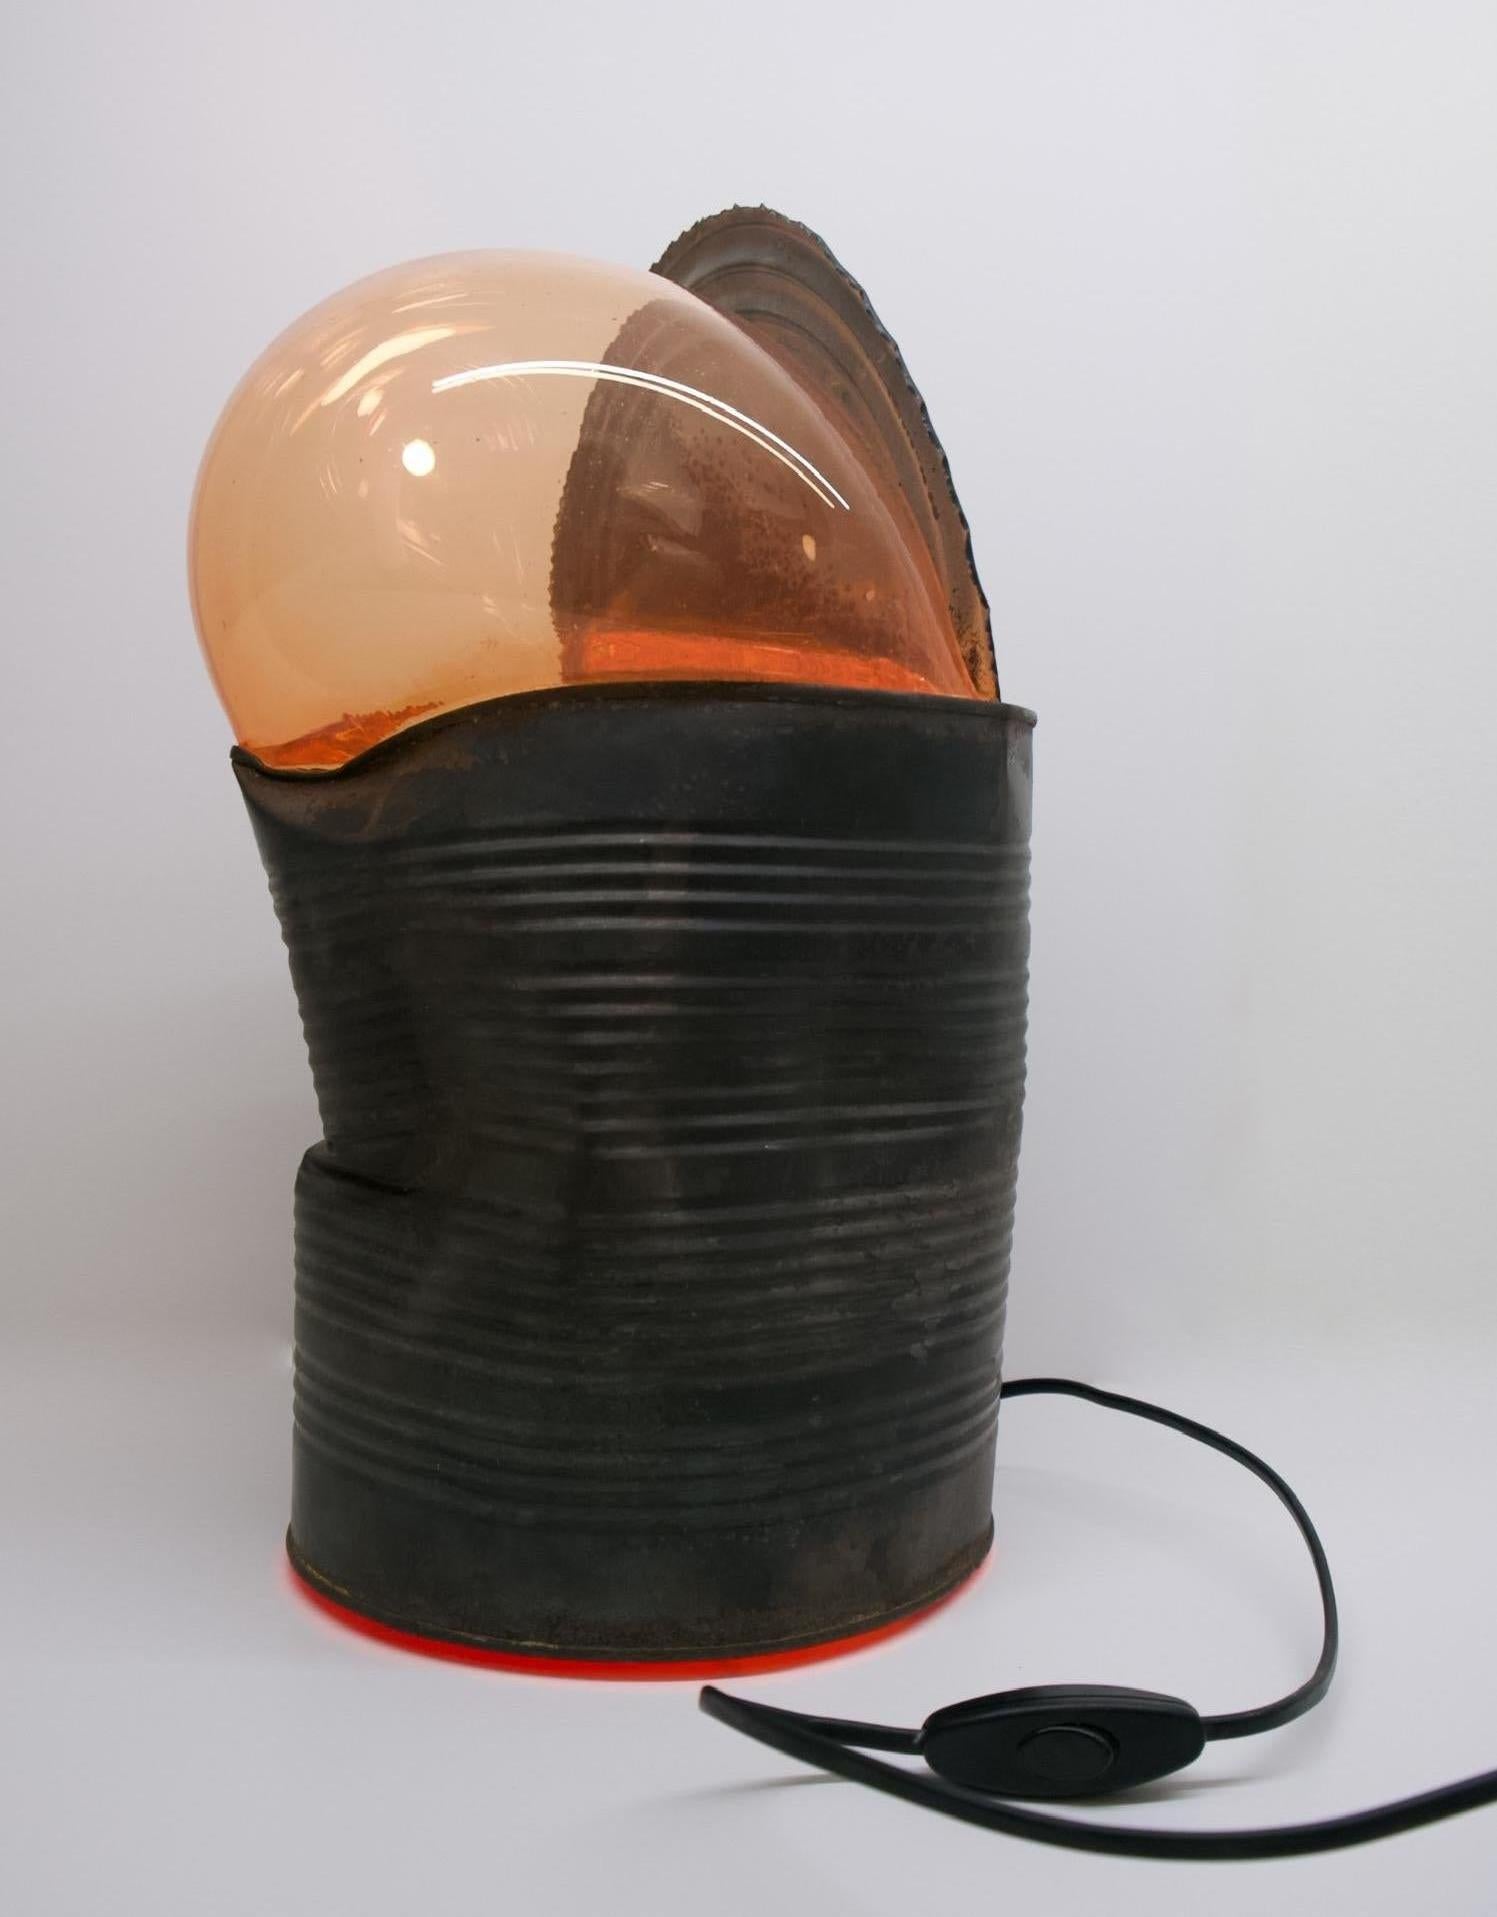 Boris Shpeizman Abstract Sculpture - Tin Can Light - Original Sculpture Lamp